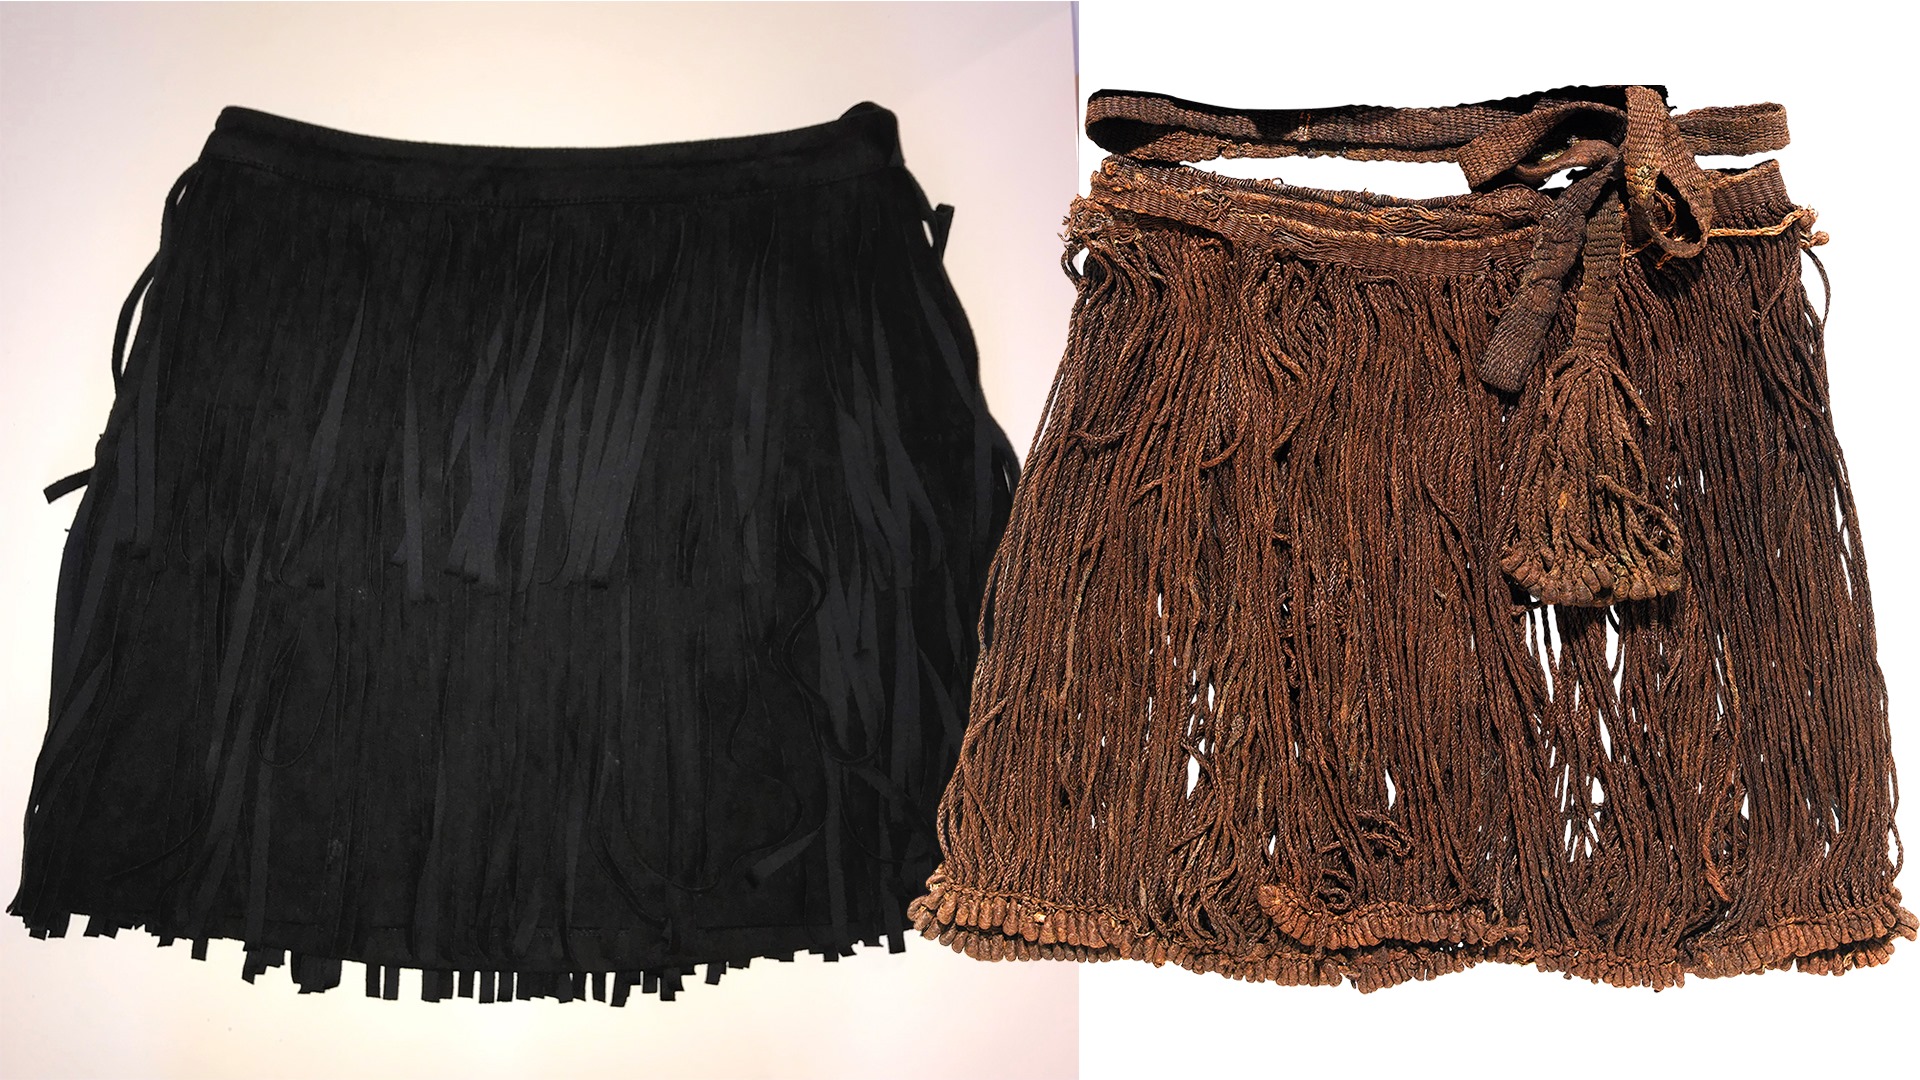 Två kjolar med fransar, en gammal från forntiden och en nyare från nutid.